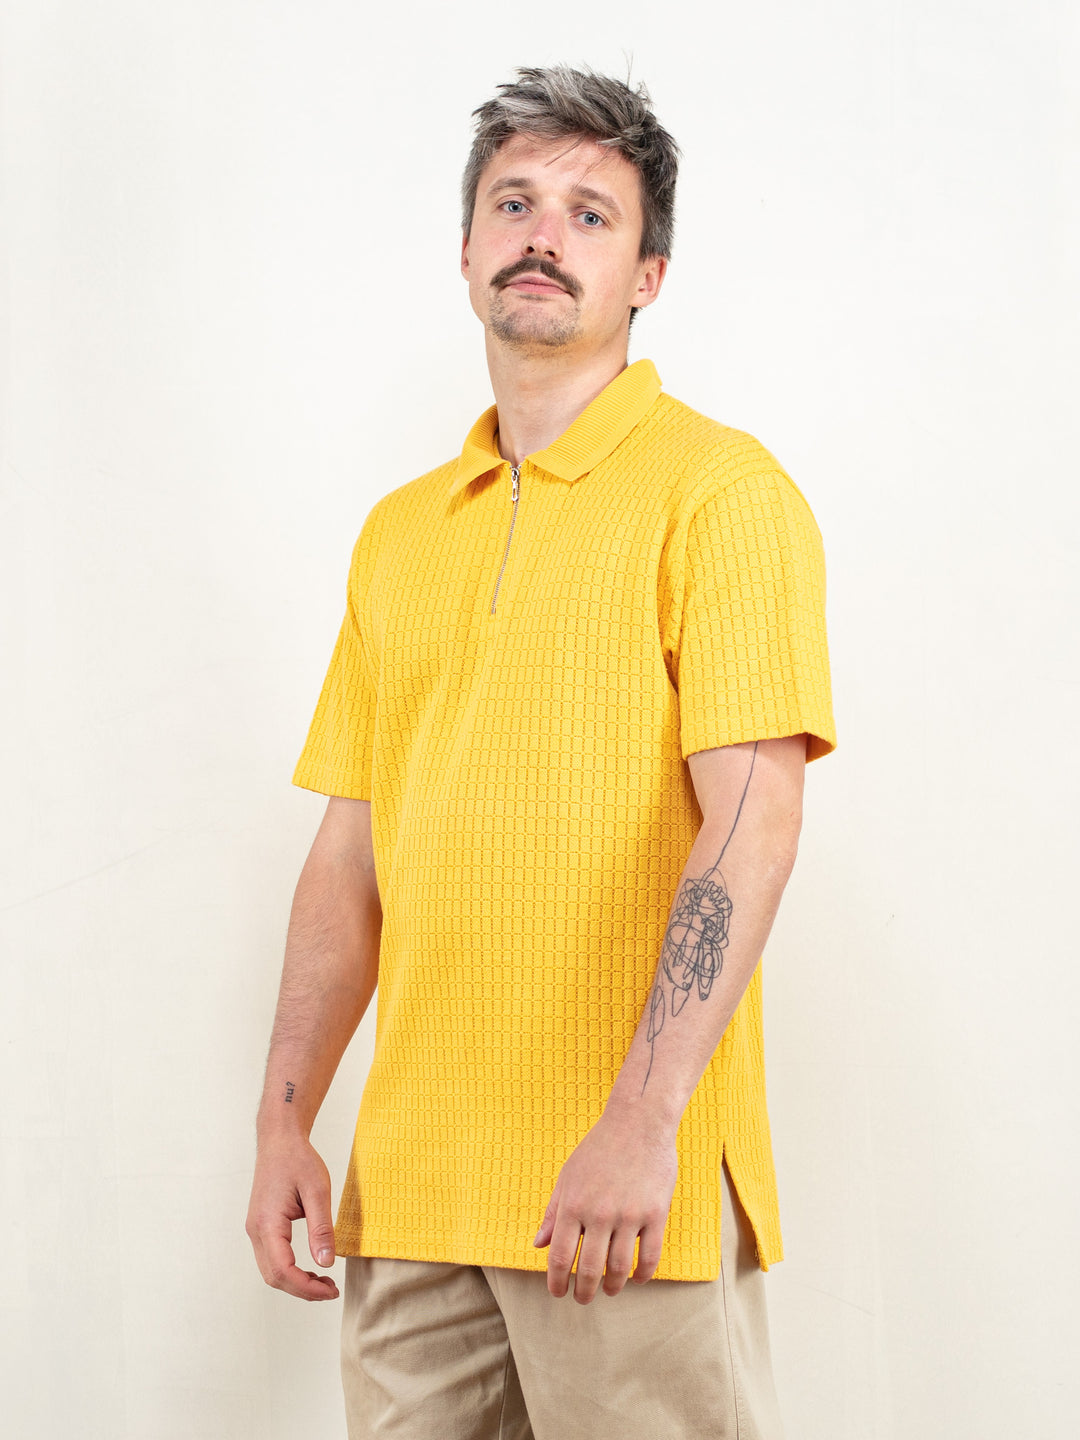 Men Knitted T-shirt 80s yellow cotton knit zip neck collared polo shirt men sun yellow short sleeve polo shirt summer t-shirt size medium